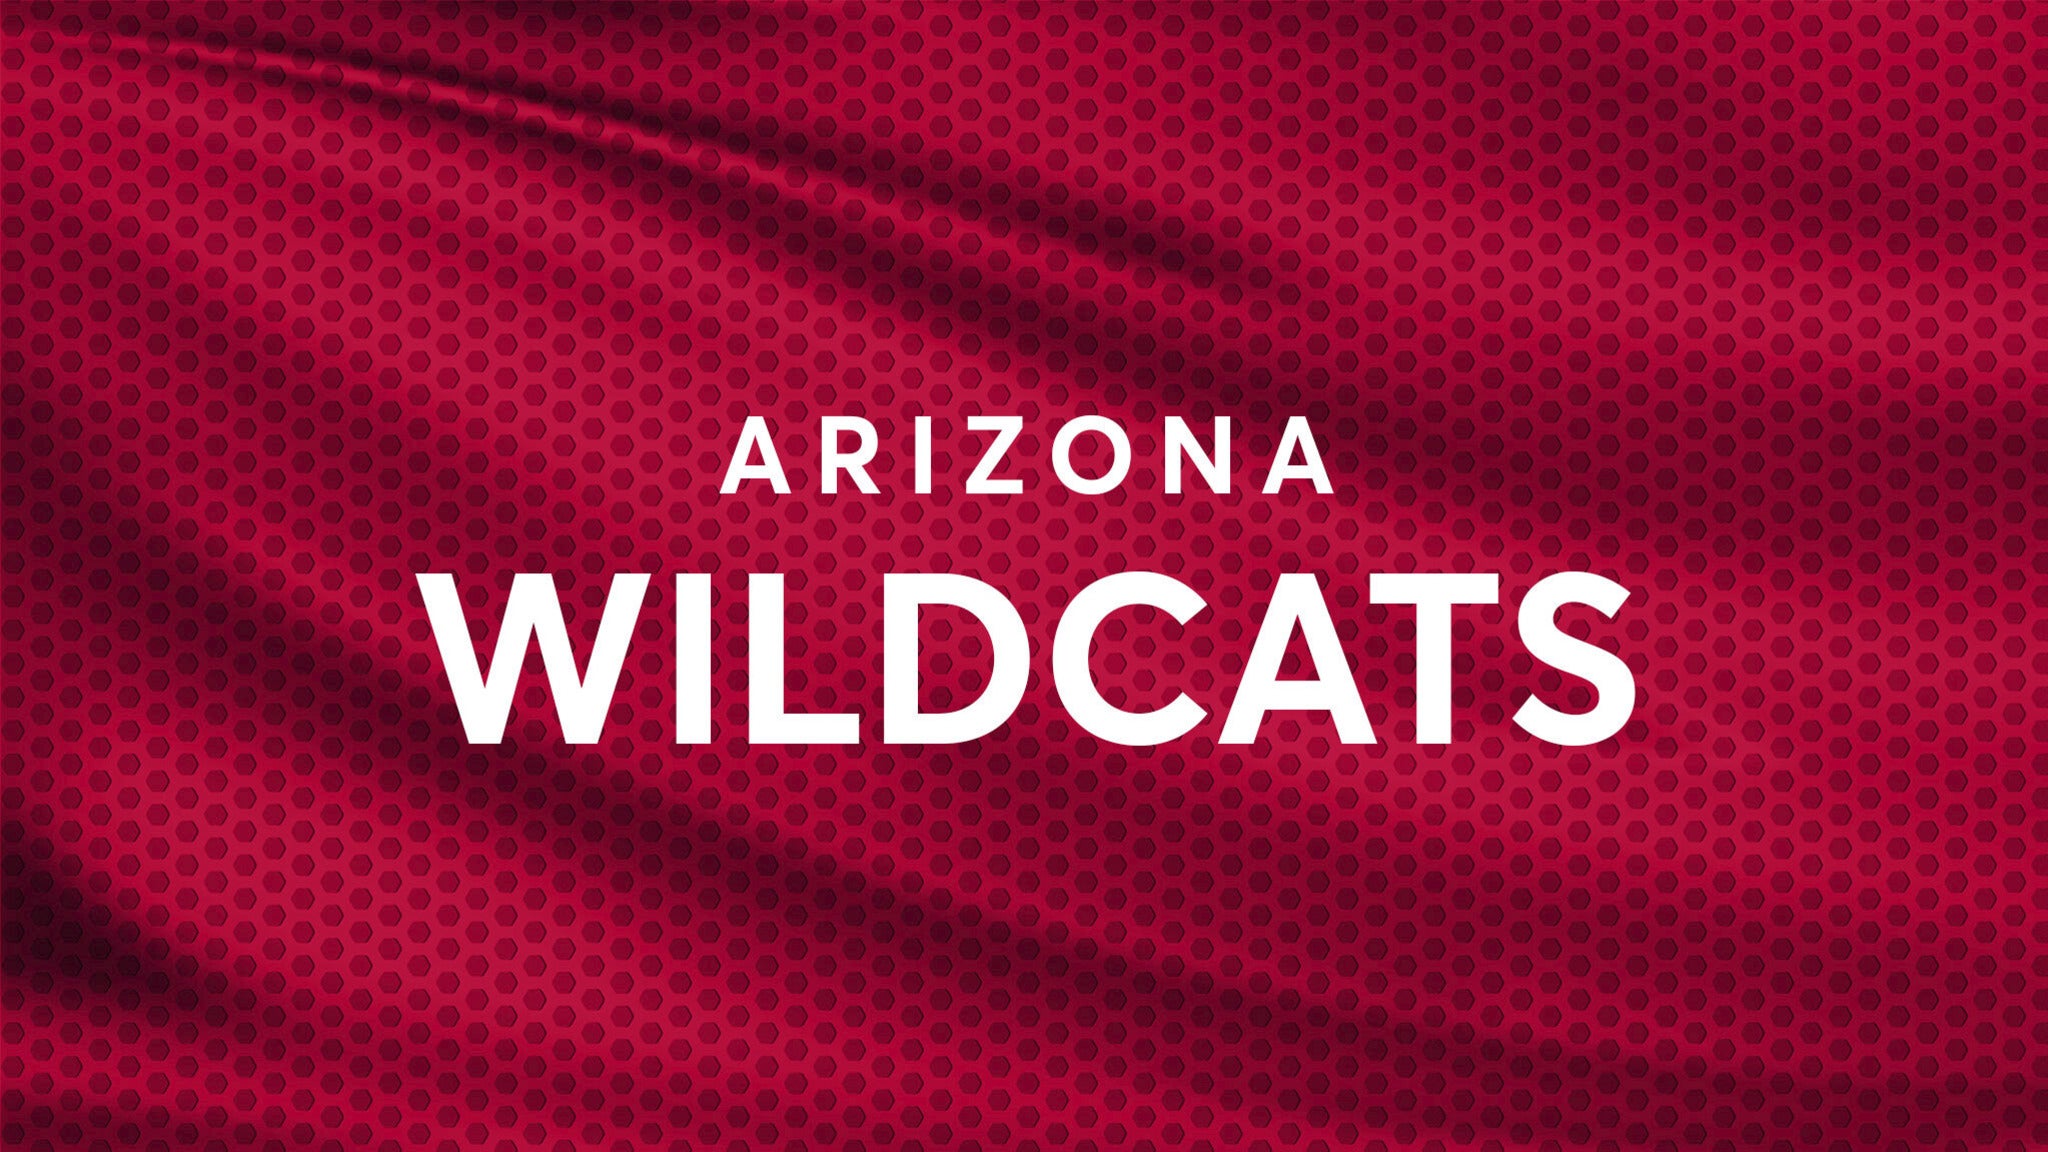 Arizona Wildcats Softball